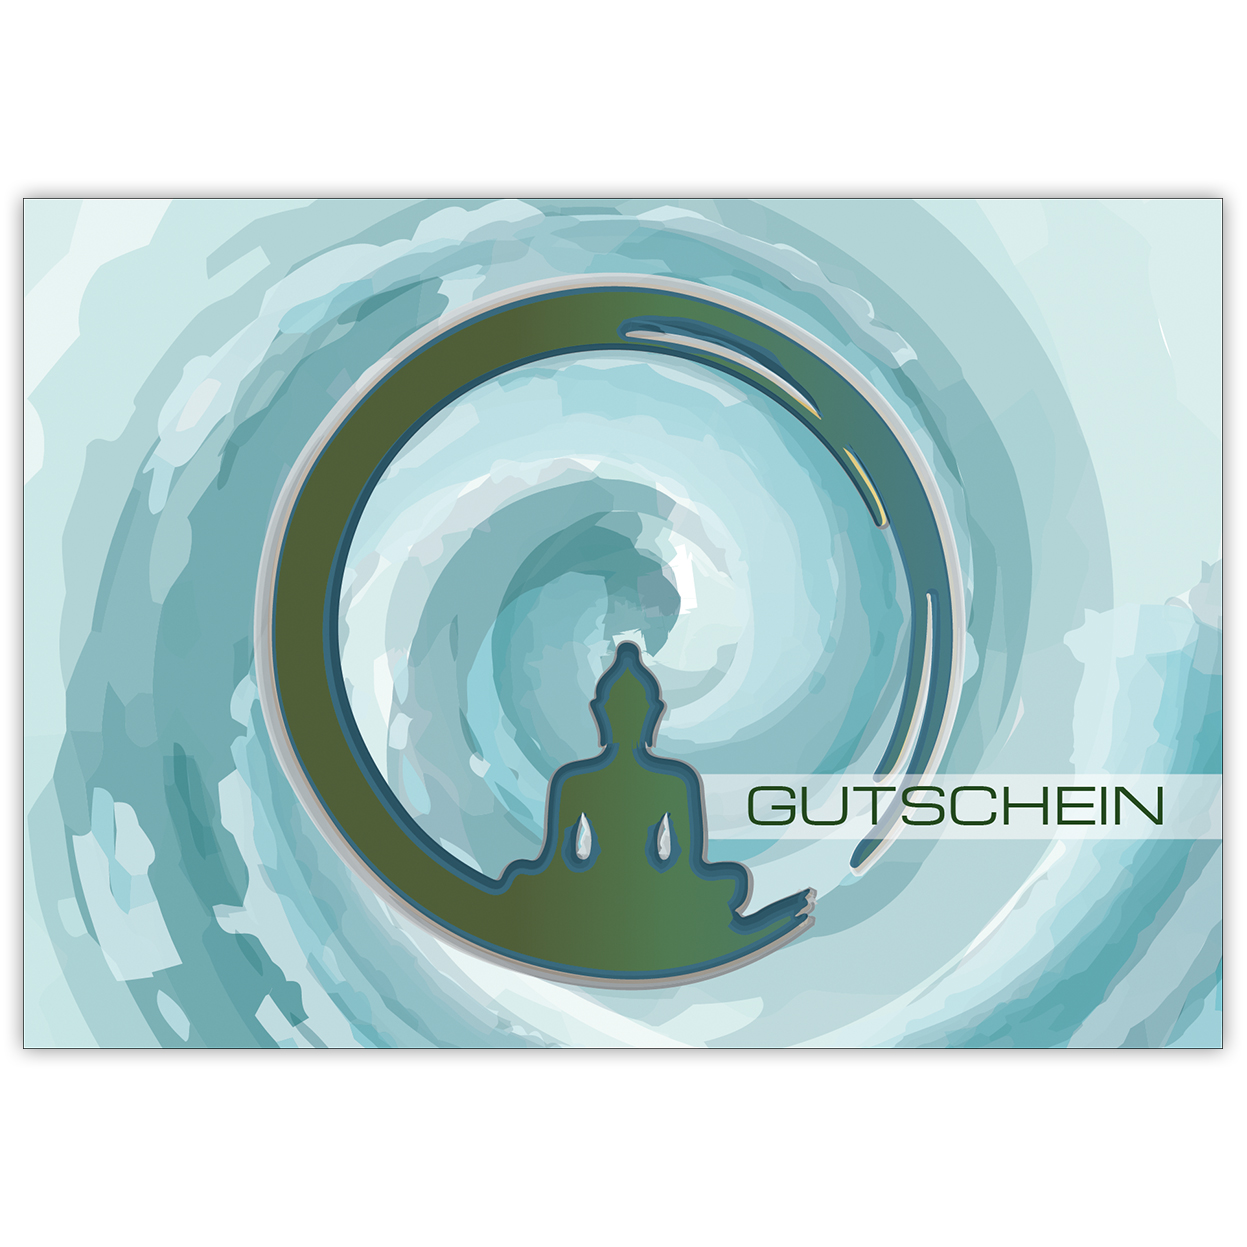 Moderne Designer Gutscheinkarte (Blanko) mit Buddha Motiv "Gutschein" in blau z.B. für Wellness Geschenke